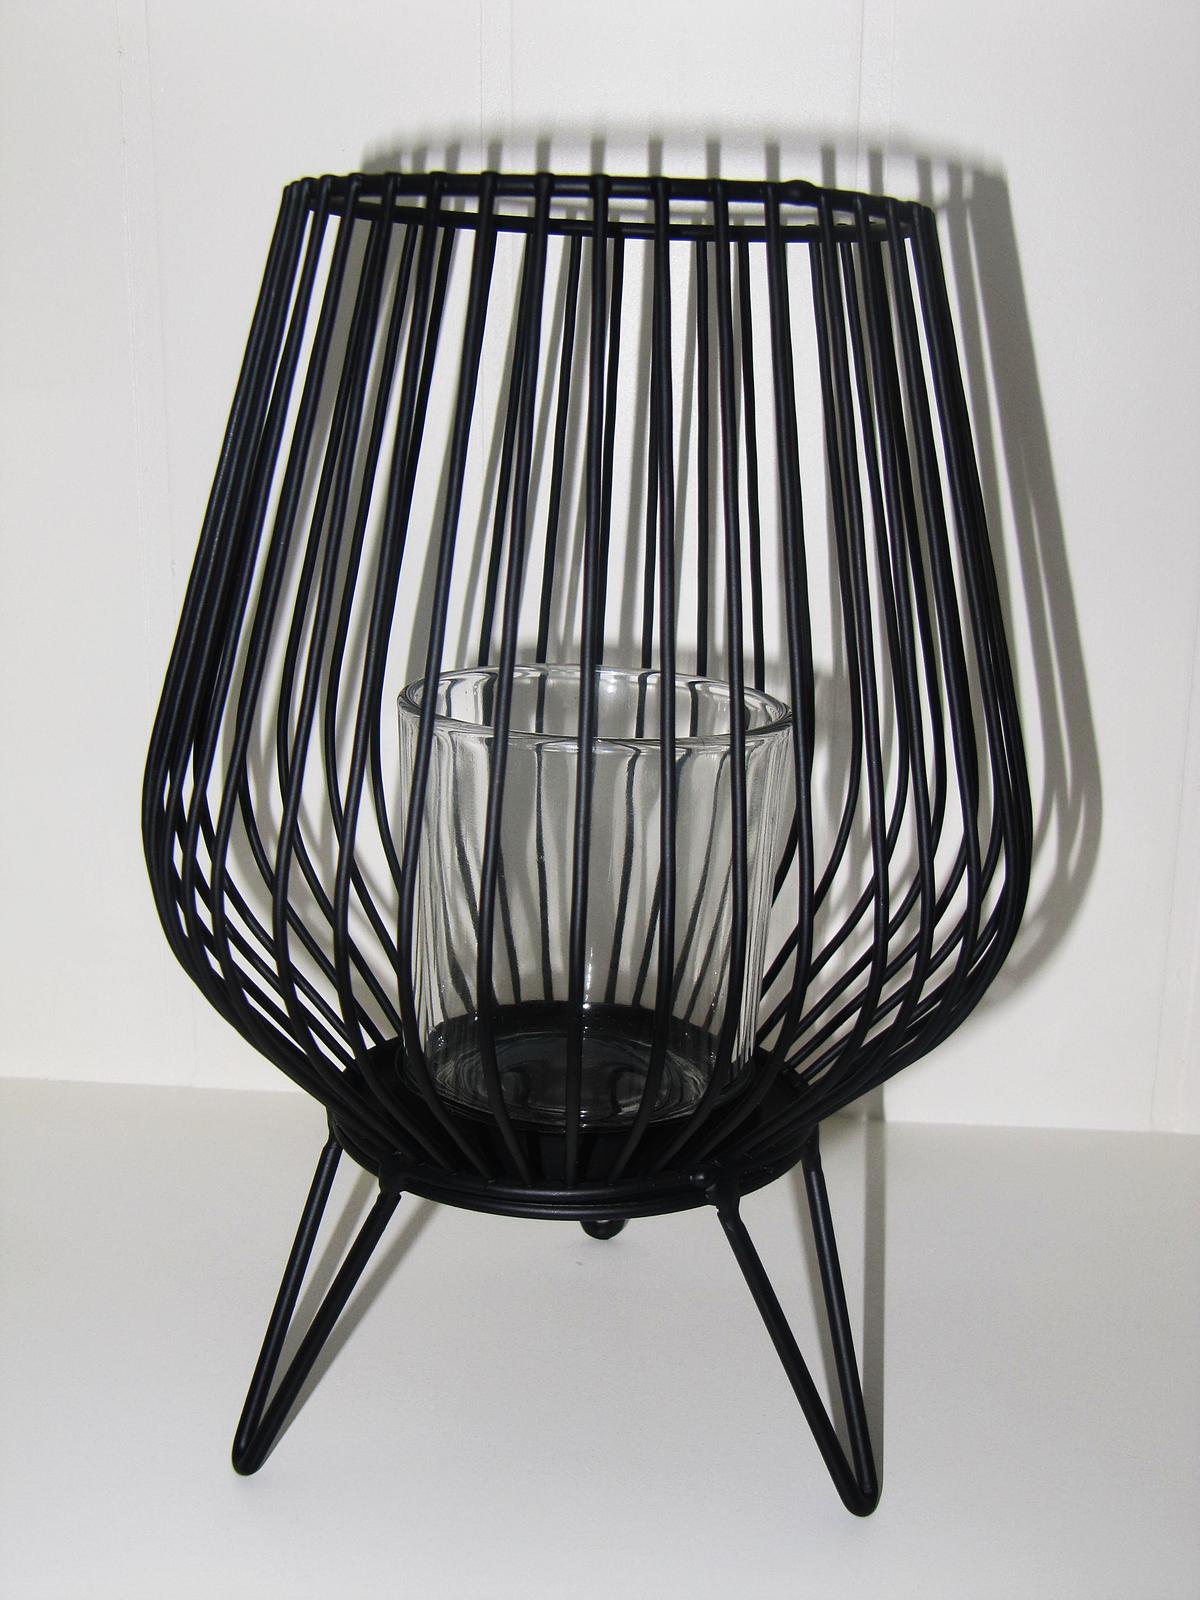 Čierny svietnik - kov, sklo. Výška 23 cm - Obrázok č. 2